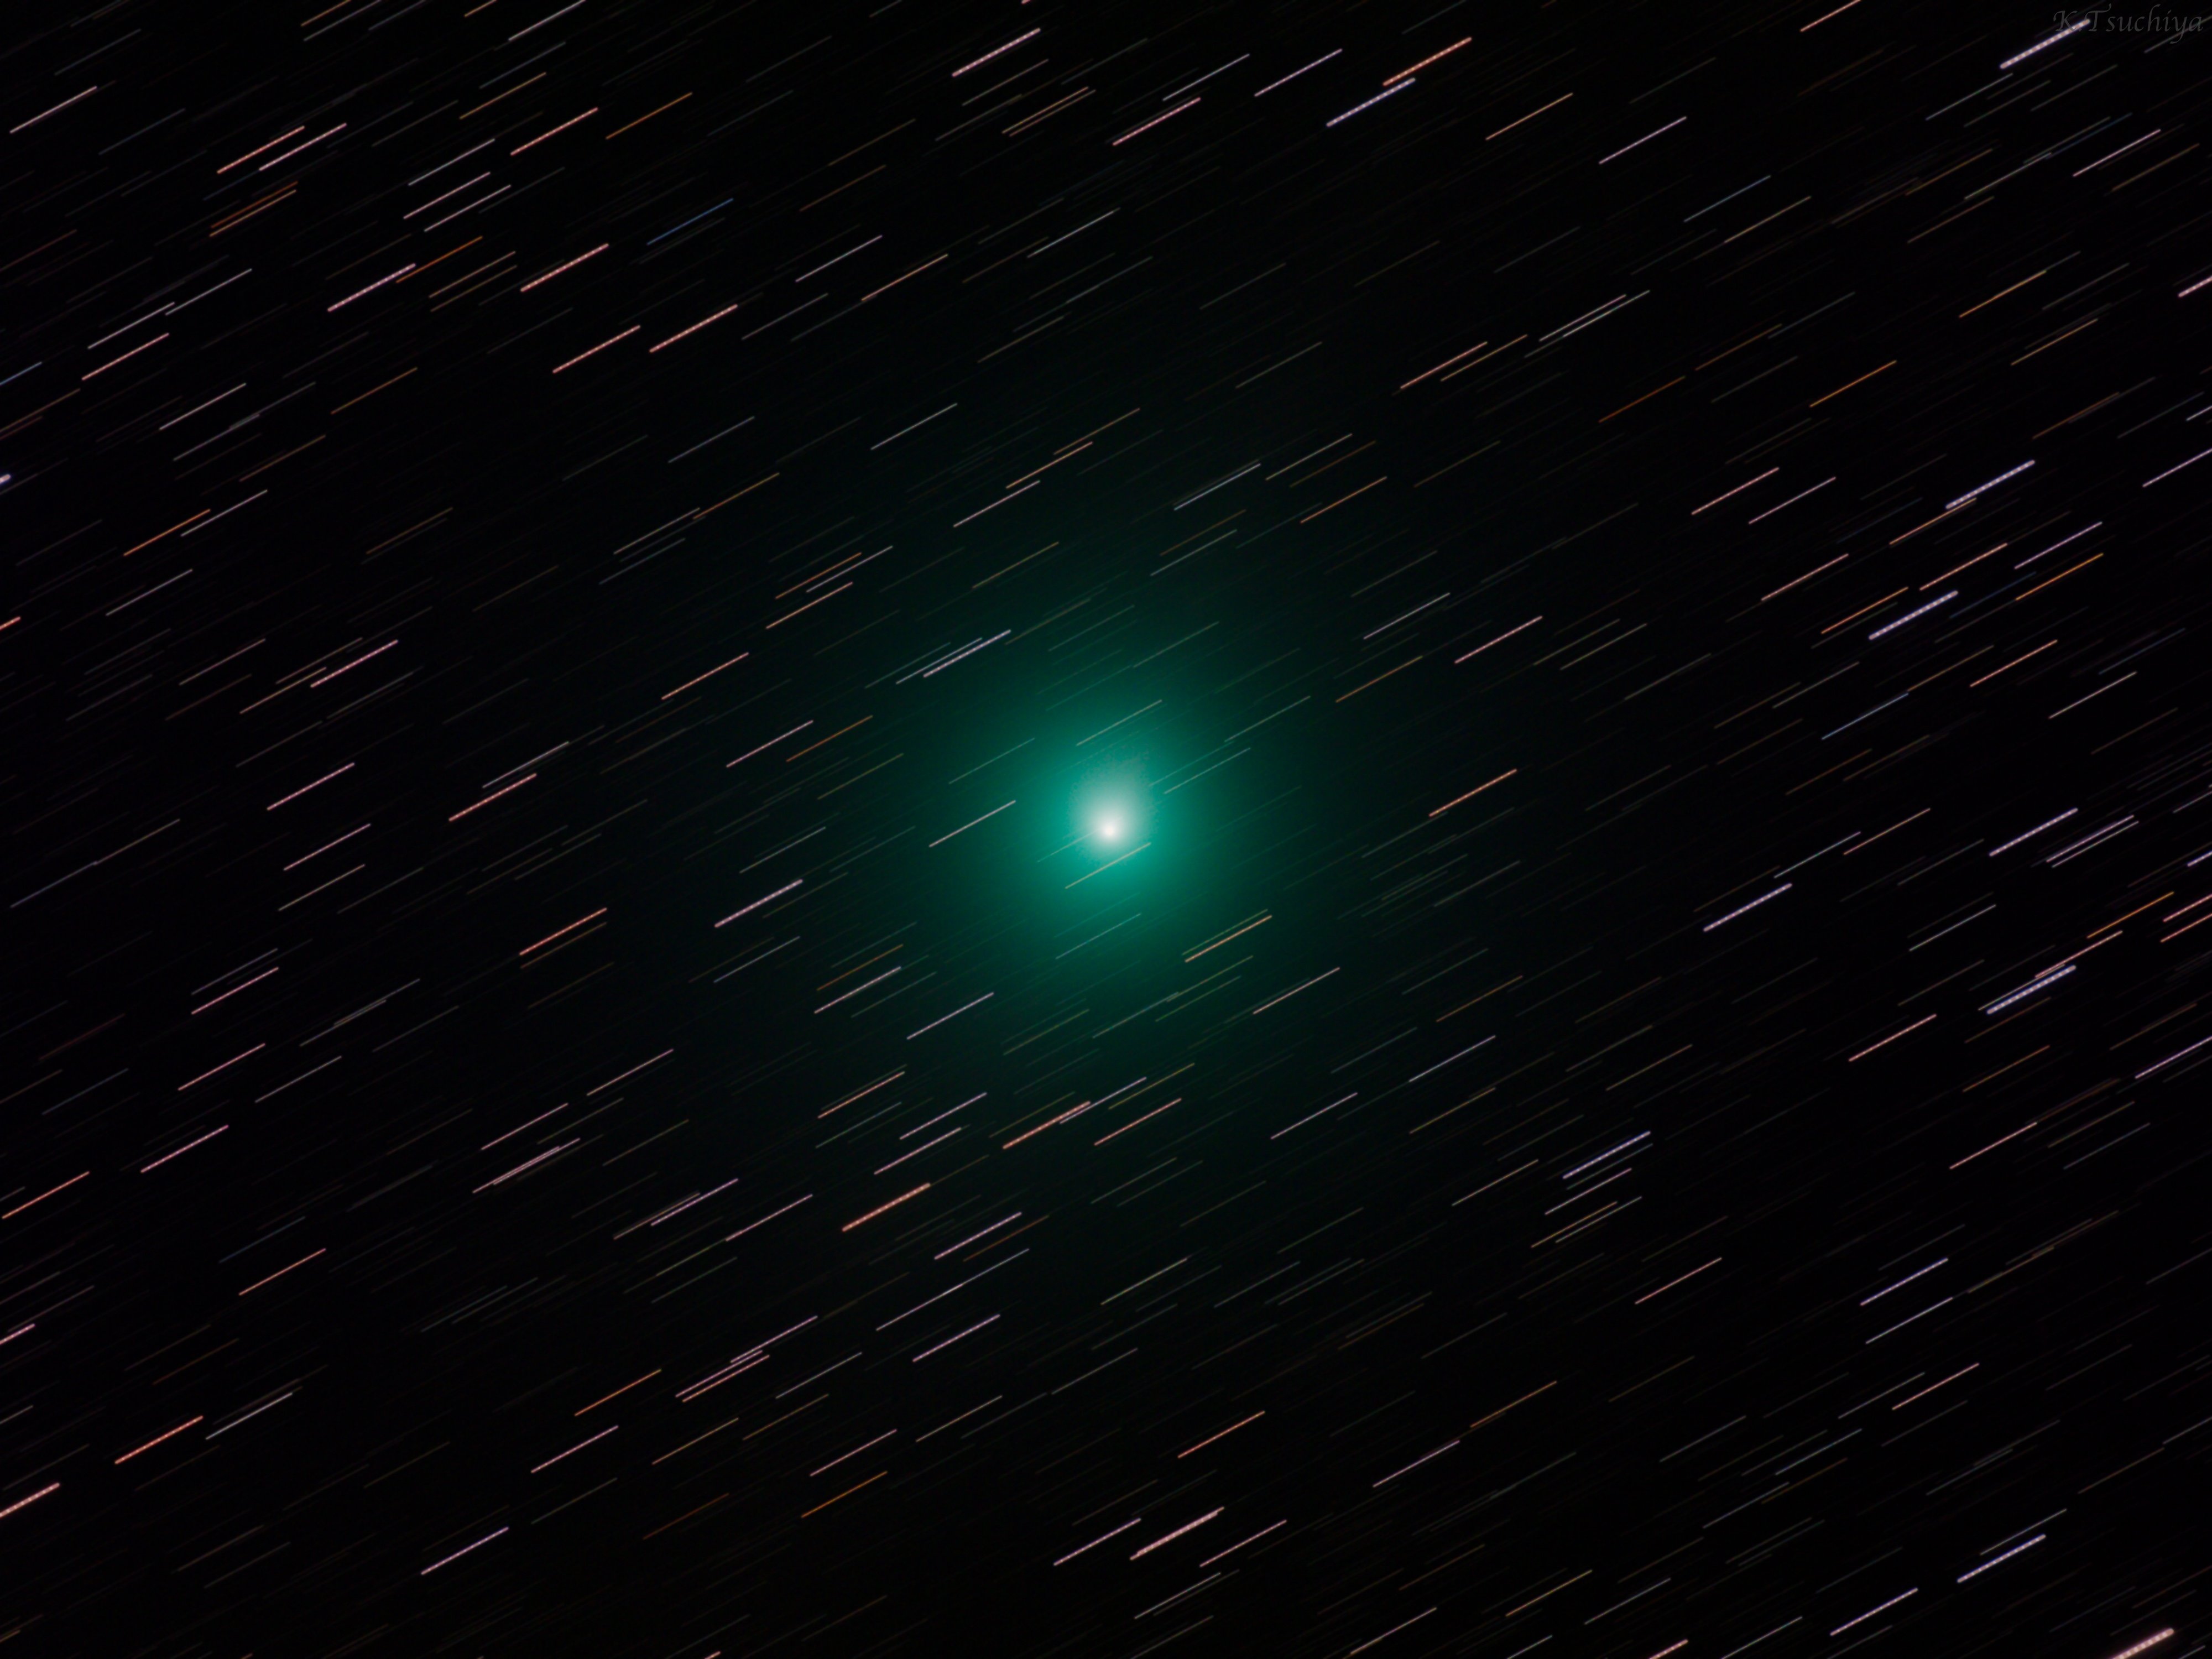 土屋憲一 核を取り囲む緑色のコマが美しいウィルタネン彗星 46p 核をロックオンして長時間撮影したので 恒星とは異なる軌道で飛んでいる事が分かります 残念ながら彗星らしい立派な尻尾は見えない 地球と正反対方向に伸びているので けど 双眼鏡や